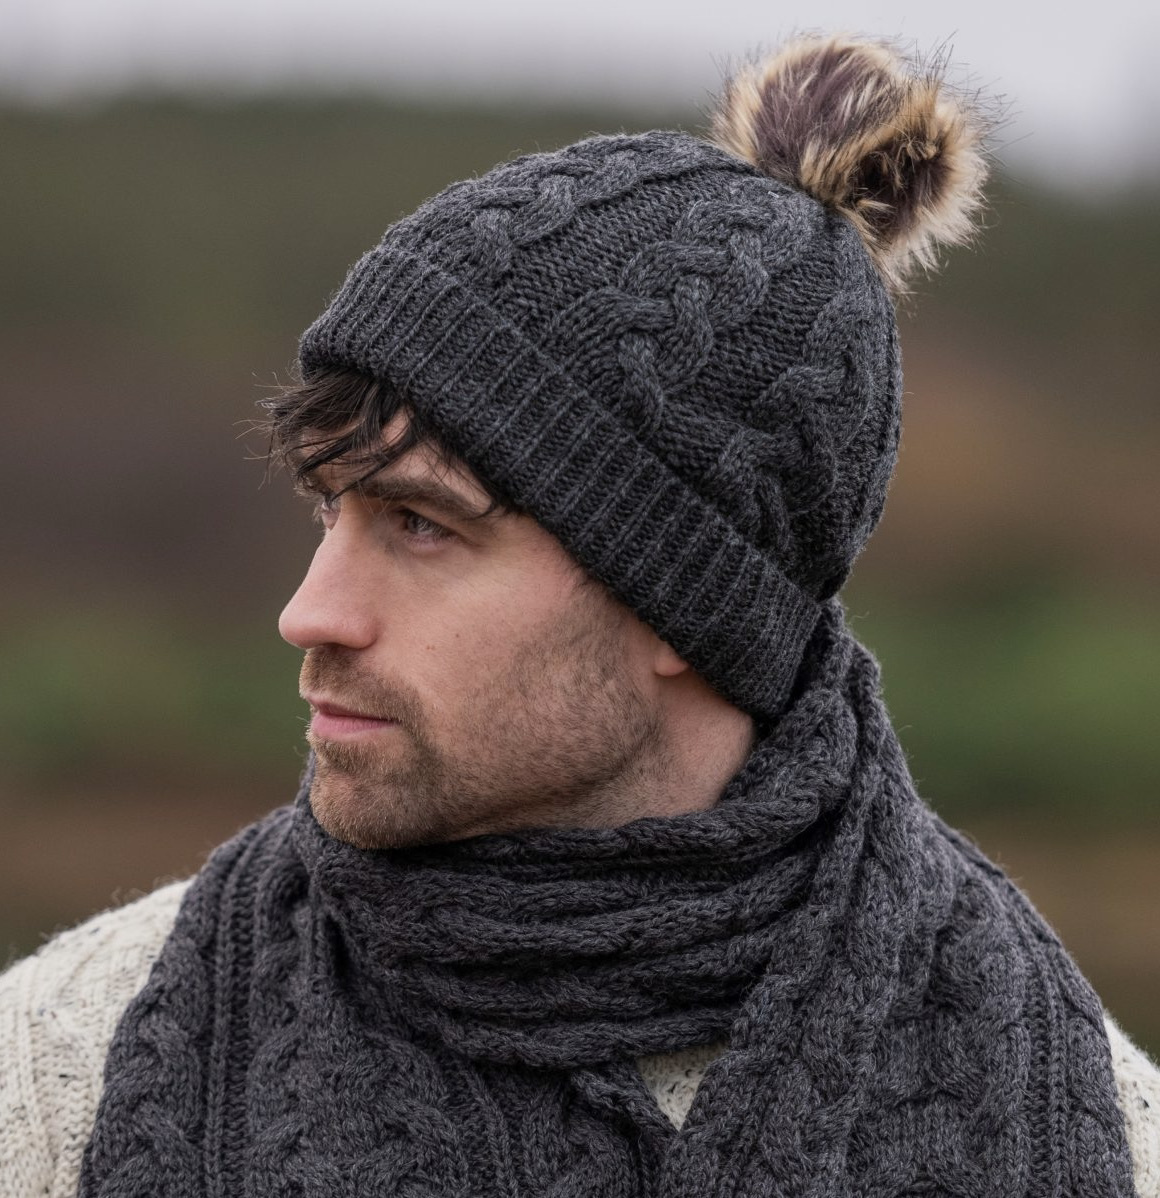 Bonnet irlandais chaud laine mérinos pompon Aran Crafts